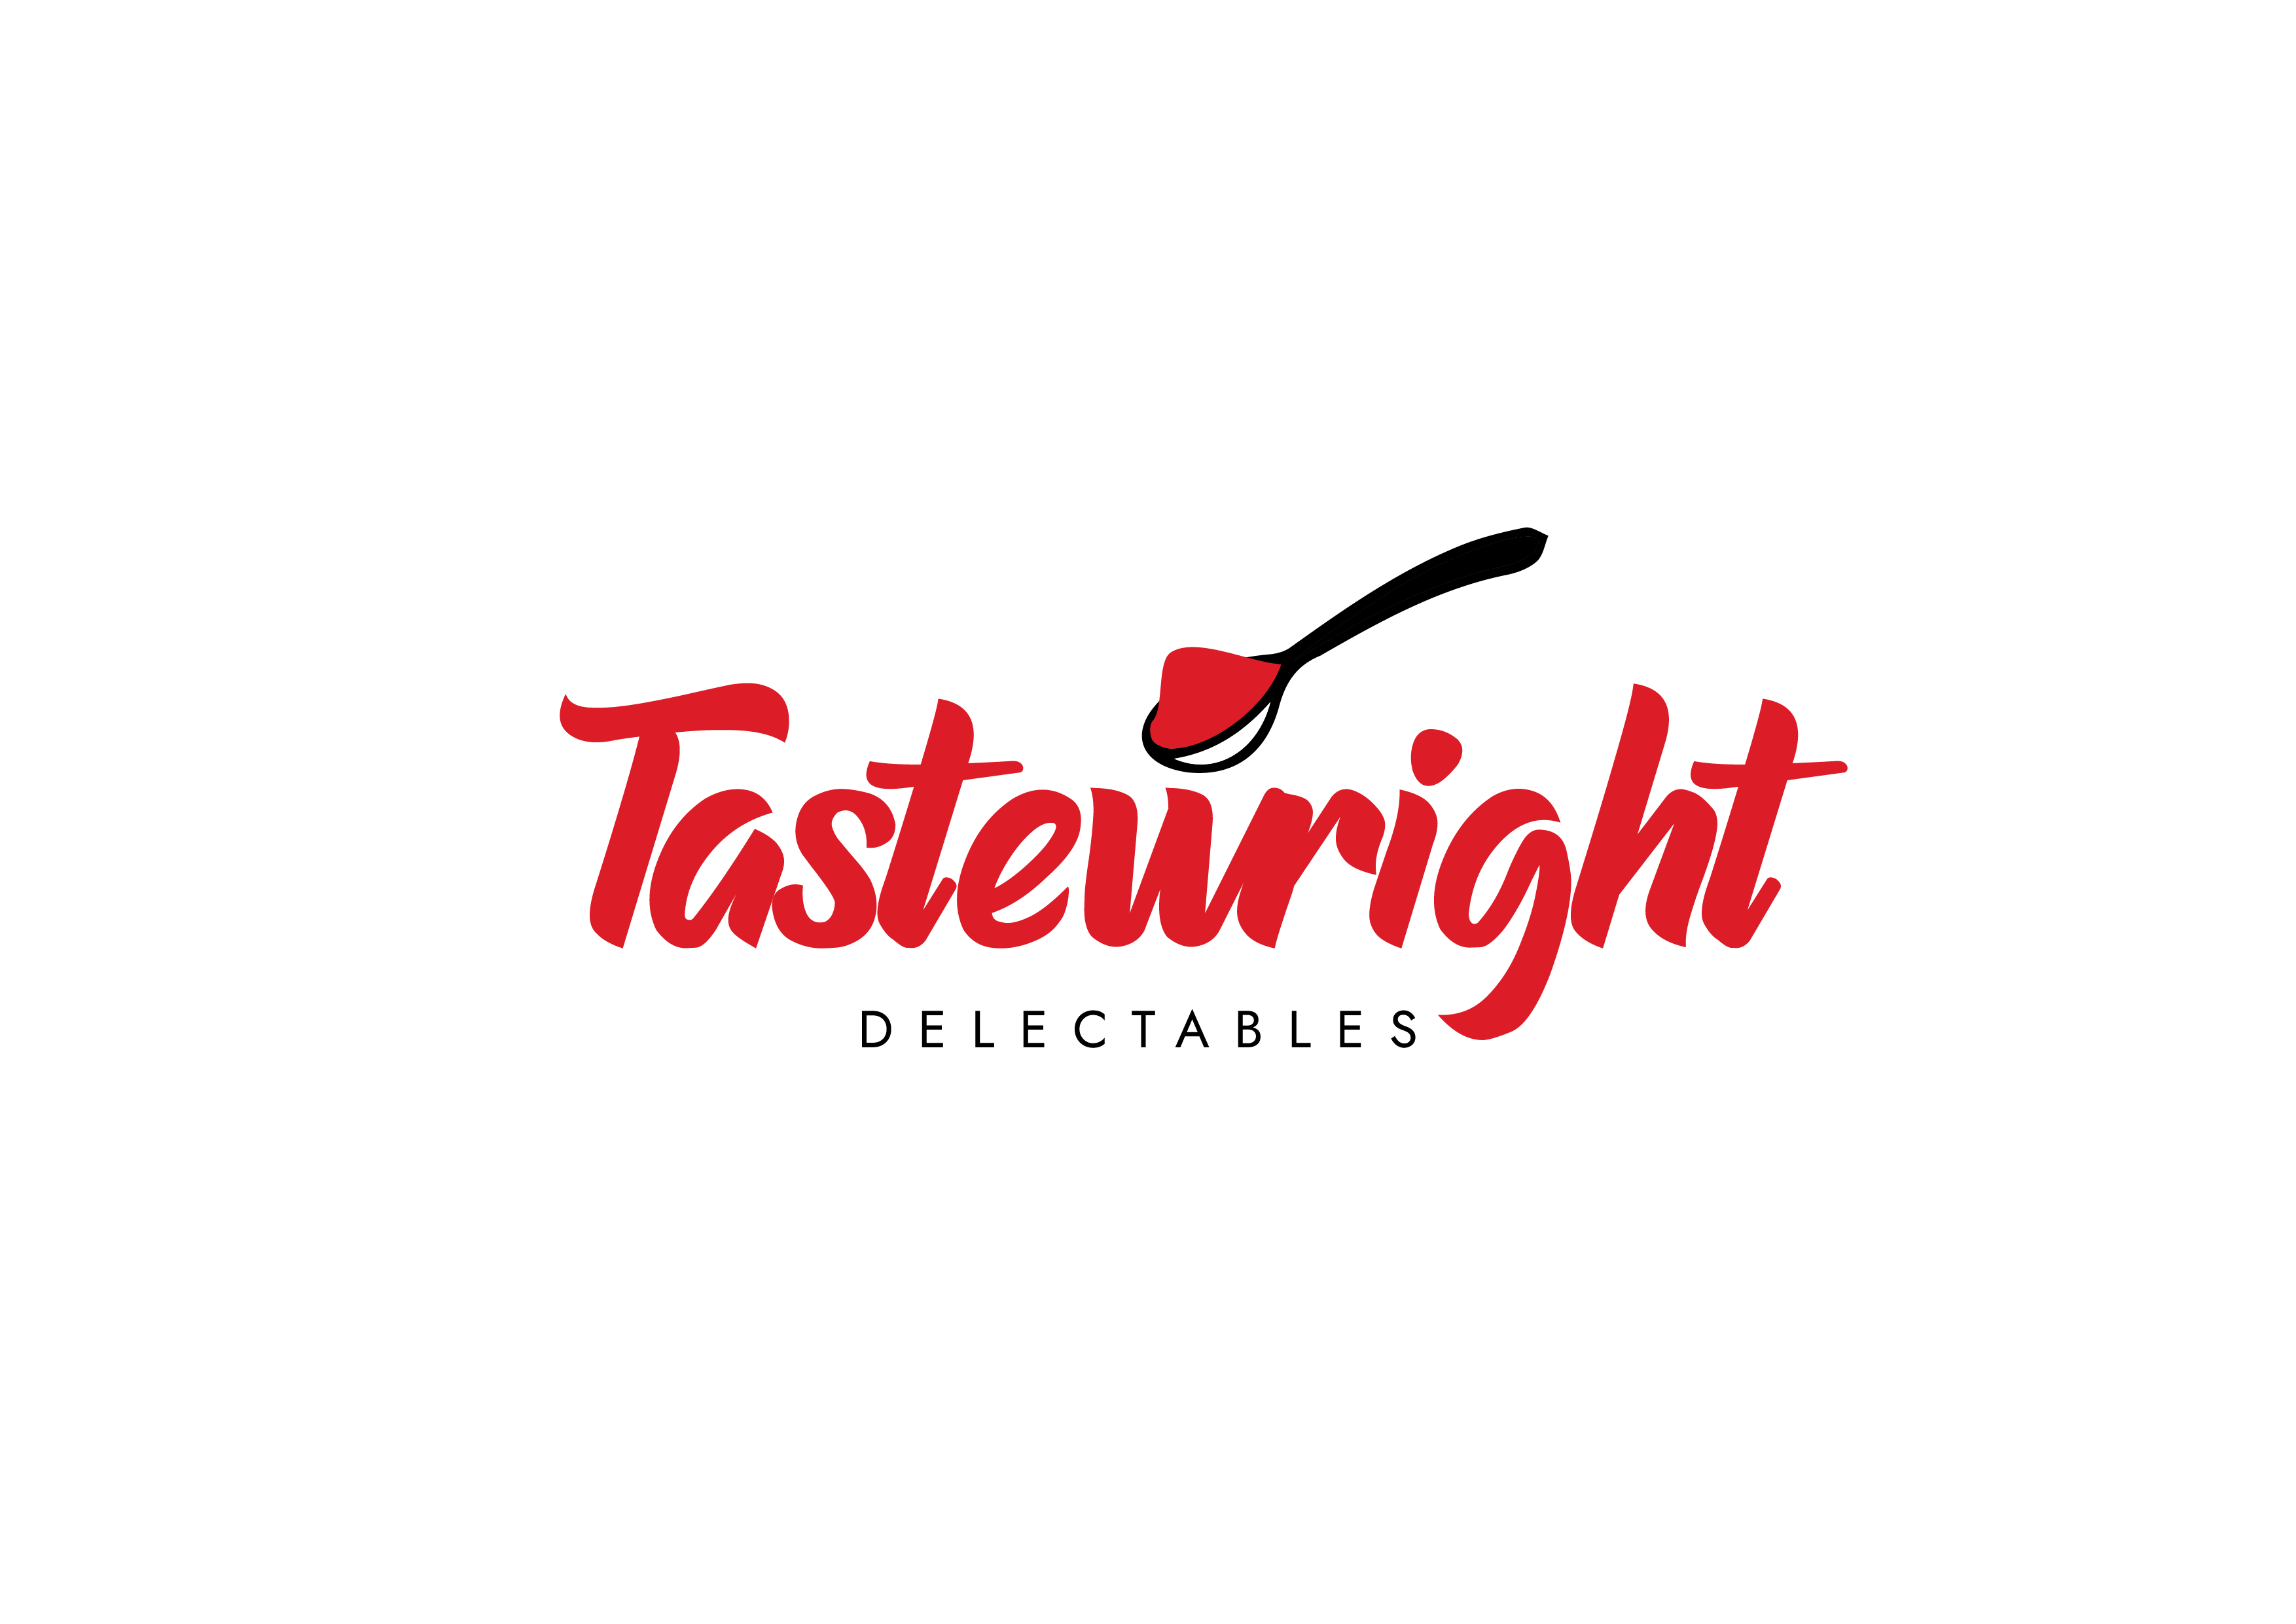 Tastewright logos-01 (1)